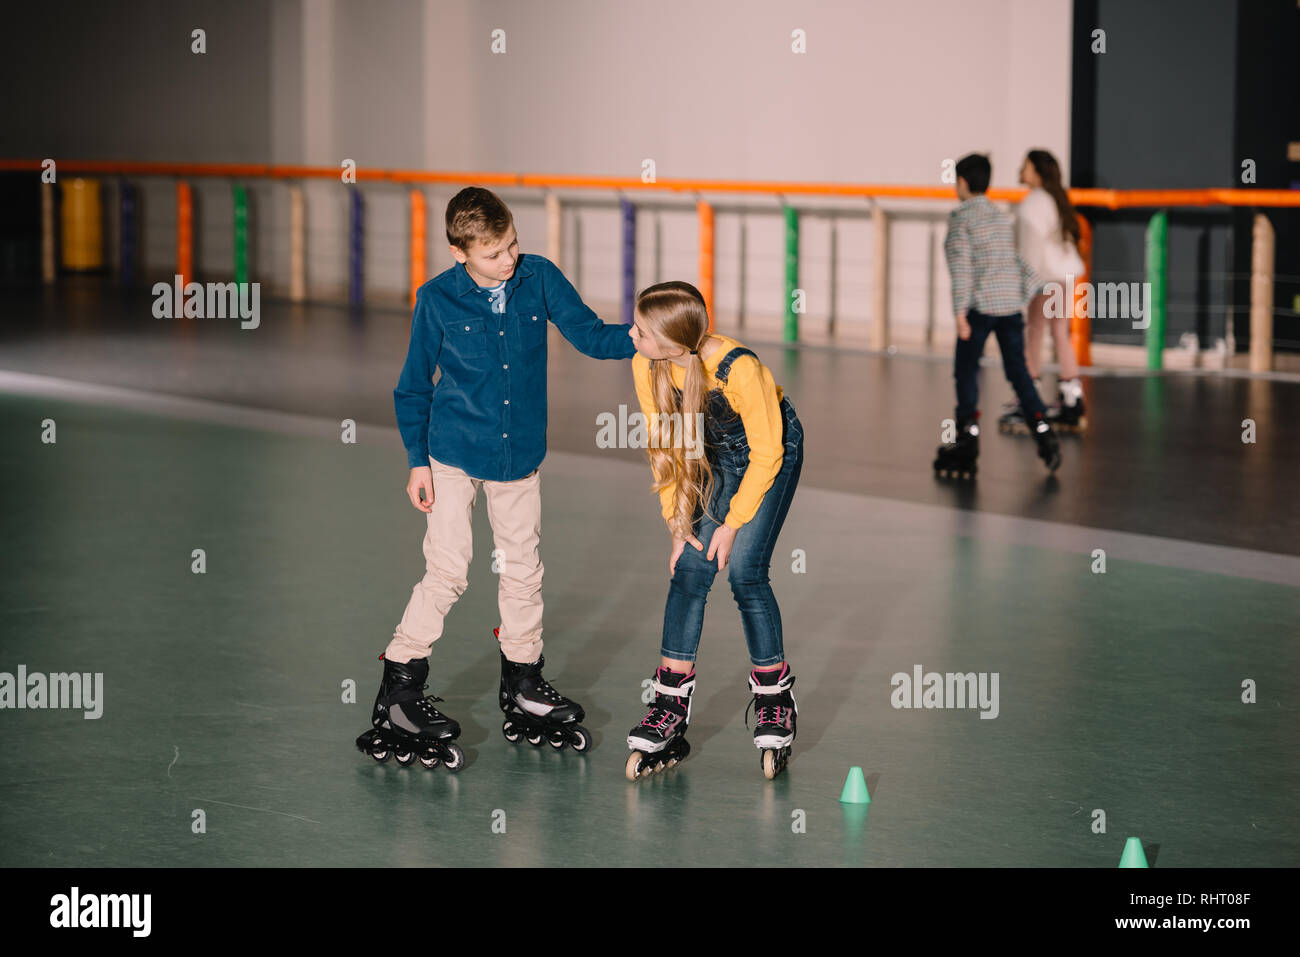 Joyful kids practicing roller skating on rink together Stock Photo